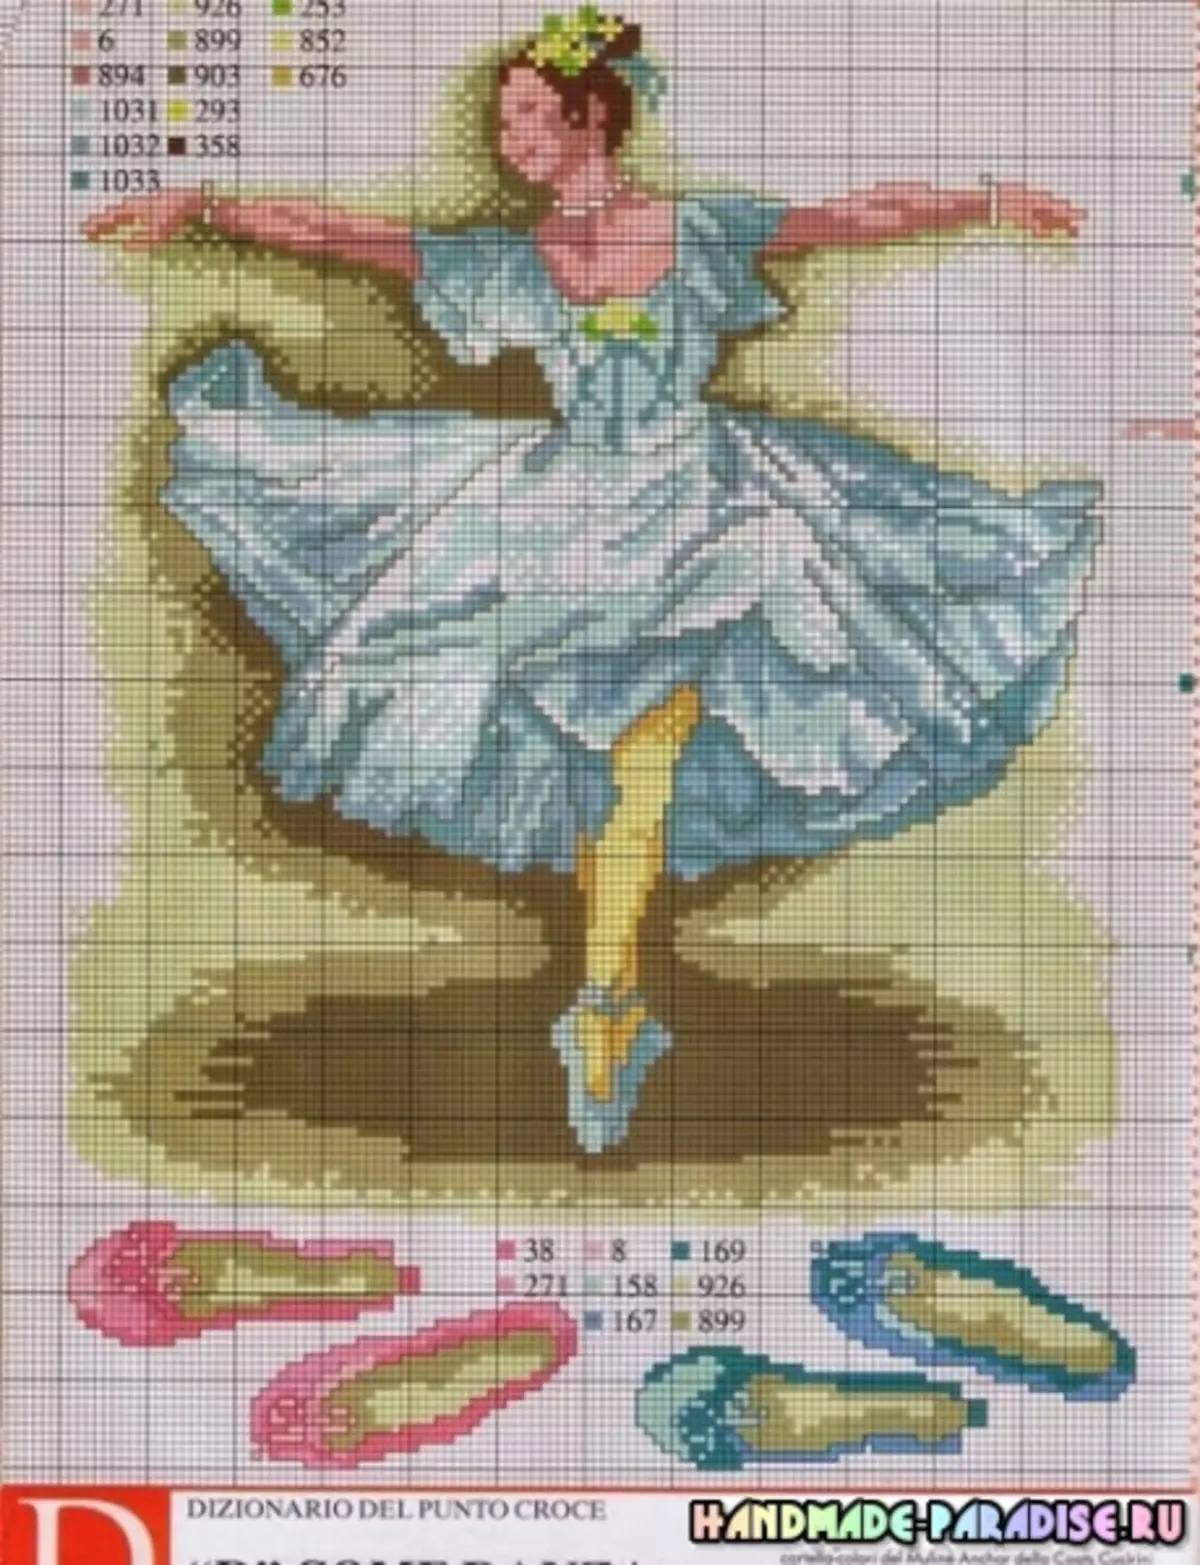 芭蕾舞女演員和舞者 - 交叉刺繡計劃